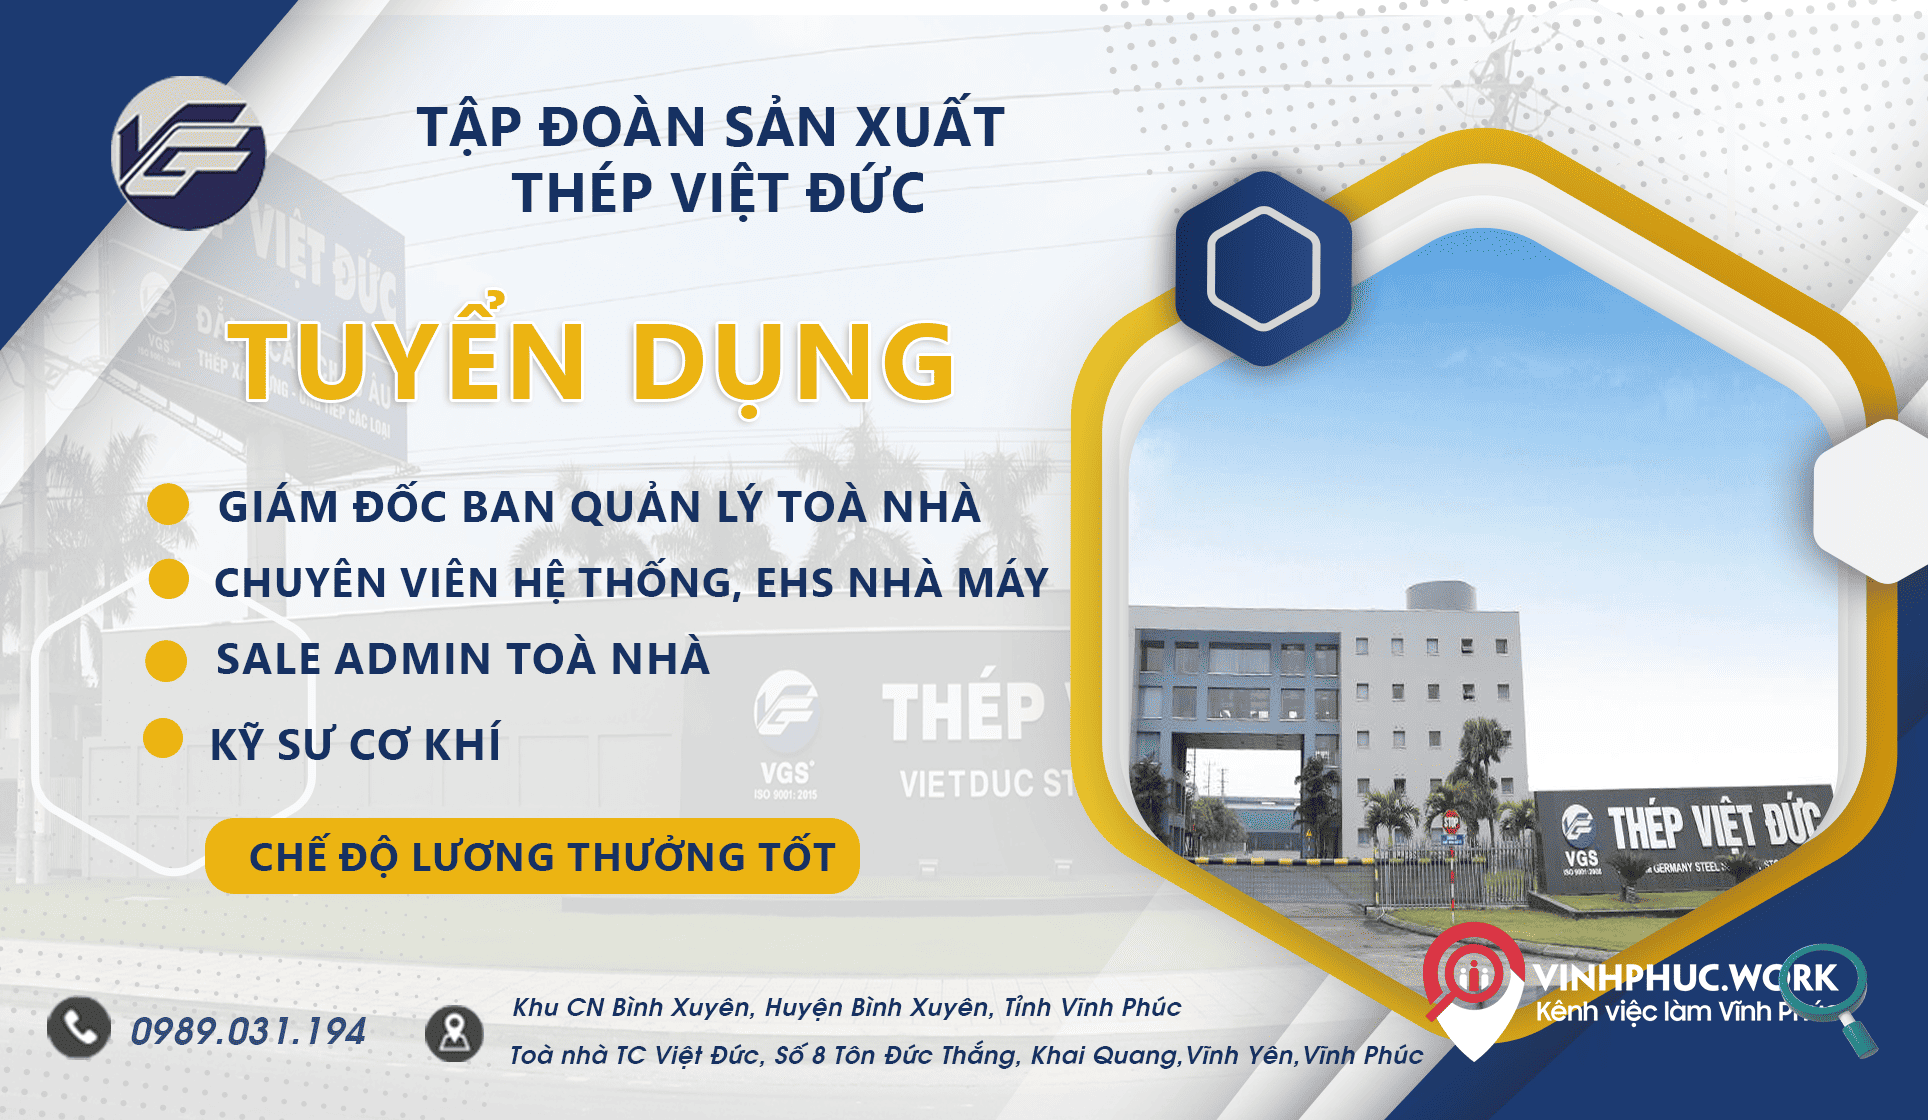 Tap Doan San Xuat Thep Viet Duc Thong Bao Tuyen Dung Nhieu Vi Tri 8